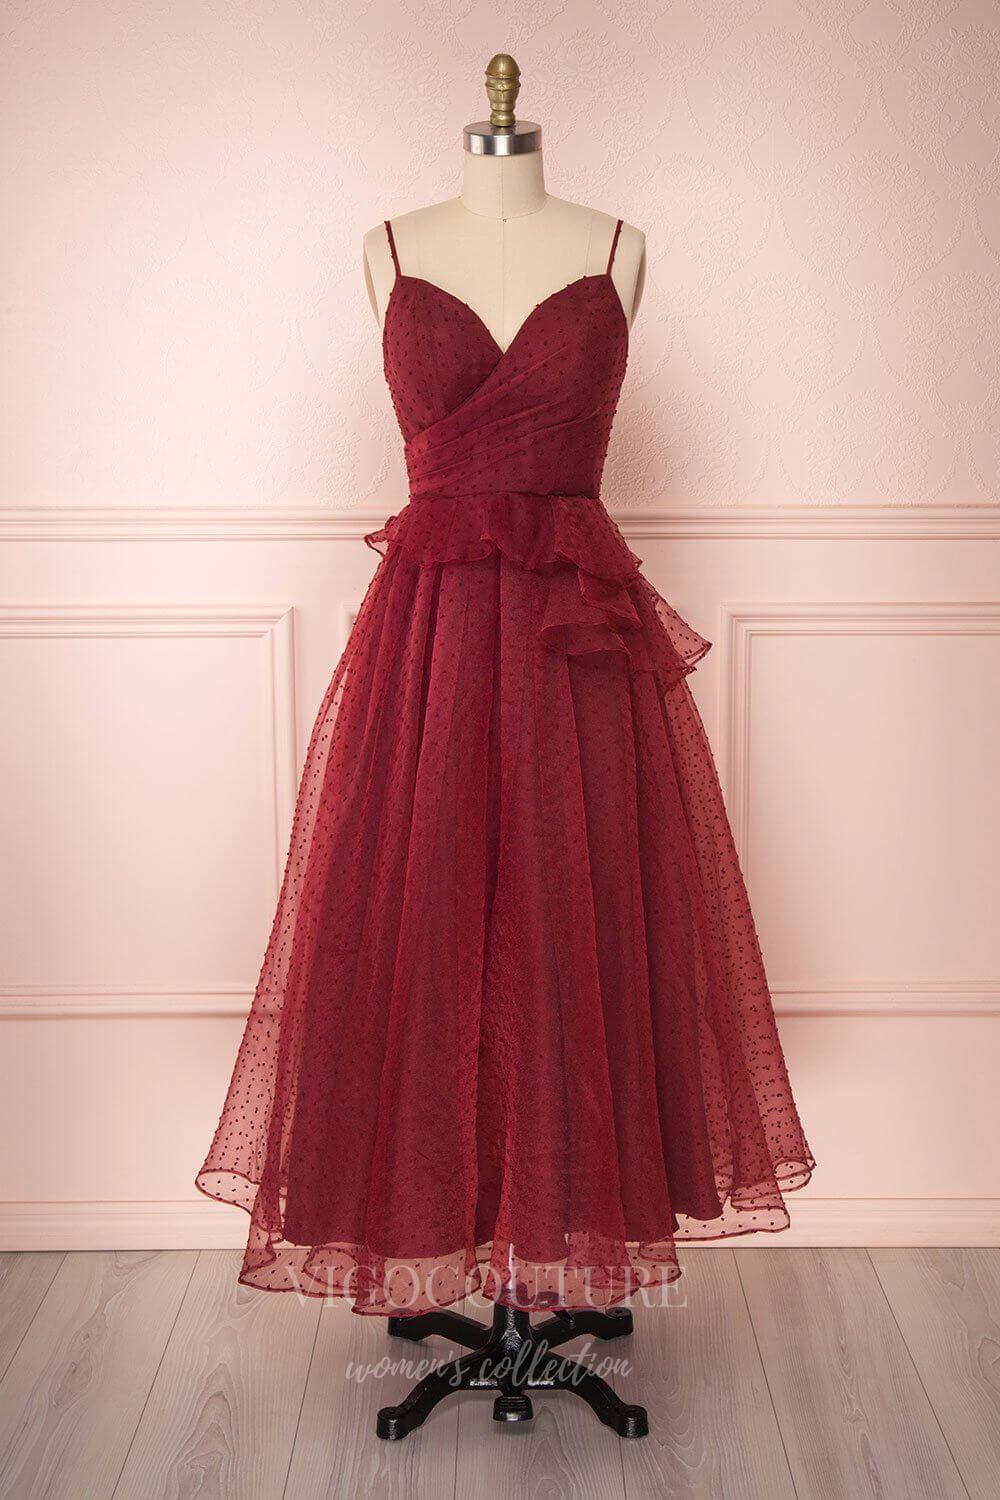 vigocouture-Red Spaghetti Strap Prom Dress 2022 Maxi Party Dress 20572-Prom Dresses-vigocouture-Red-US2-